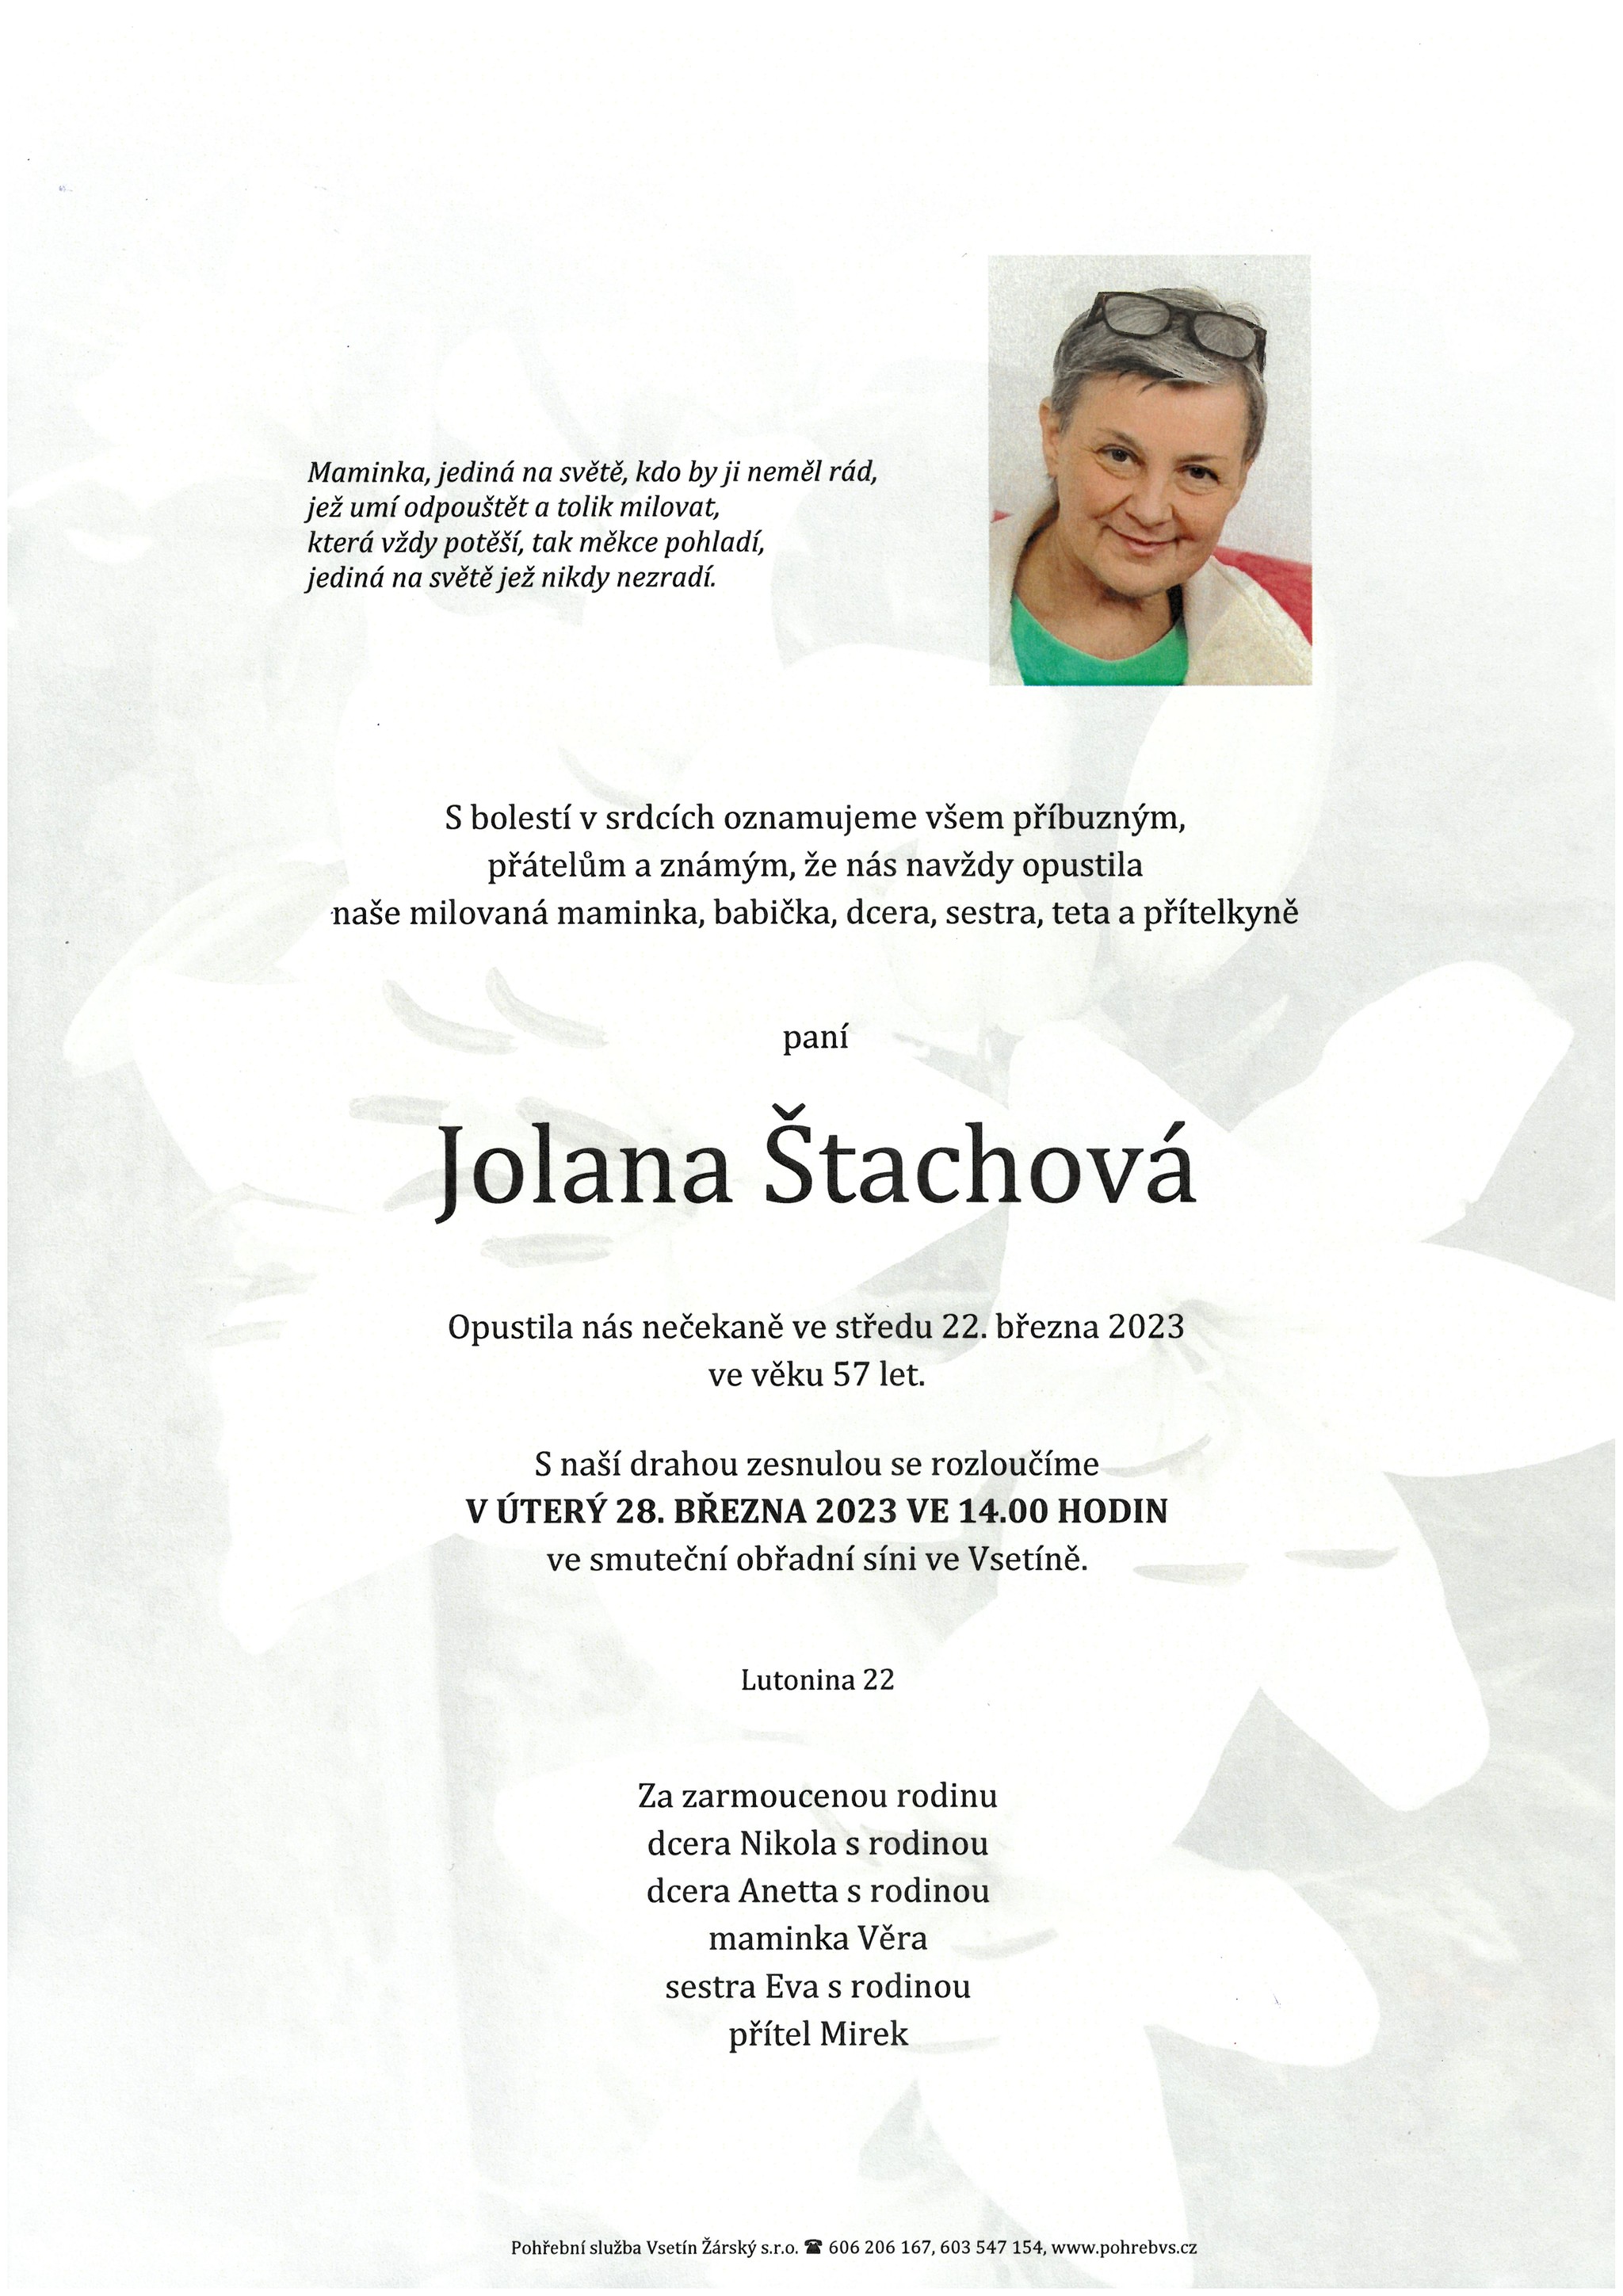 Jolana Štachová